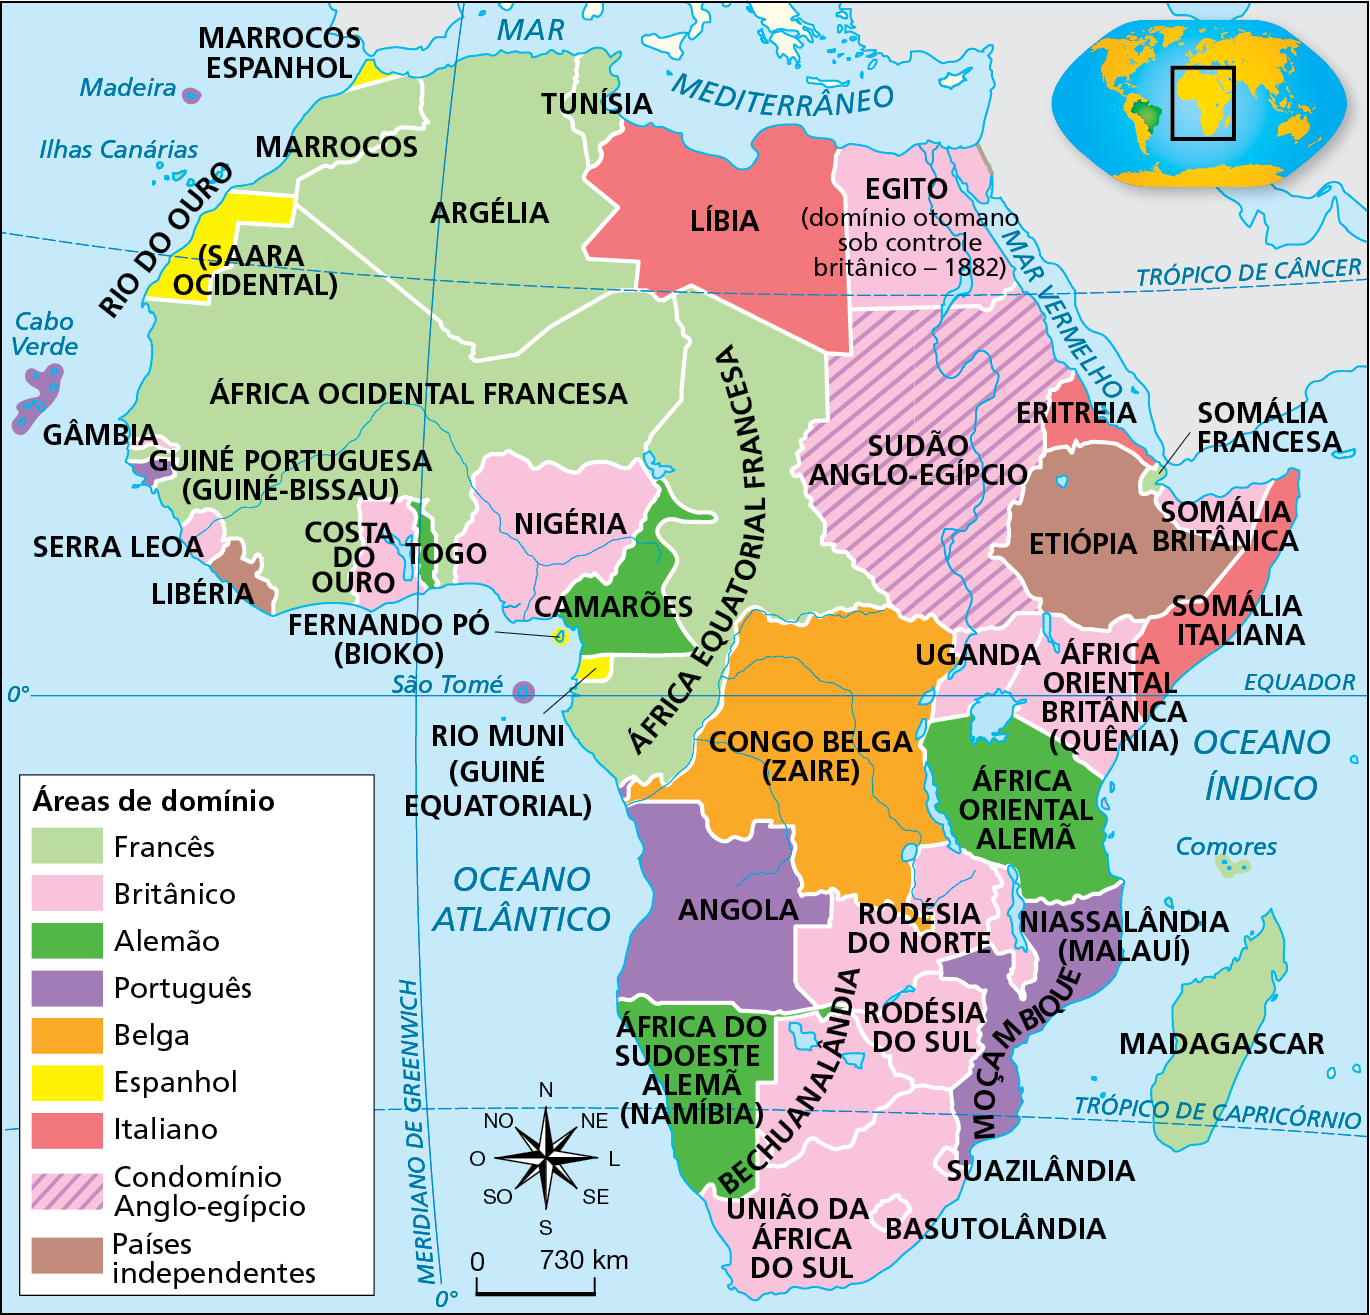 Mapa. Impérios coloniais na África (1914). Mapa representando o continente africano, dividido politicamente em várias áreas de domínio destacadas por cores distintas. 
Em verde claro, “Áreas de domínio francês”, compreendendo Marrocos, Tunísia, Argélia, África Ocidental Francesa, África Equatorial Francesa, Somália Francesa, Madagascar e Gâmbia. 
Em rosa claro, “Áreas de domínio Britânico”, compreendendo o Egito (domínio otomano sob controle britânico – 1882), Serra Leoa, Costa do Ouro, Nigéria, Uganda, África Oriental Britânica (Quênia), Somália Britânica, Rodésia do Norte, Rodésia do Sul, União da África do Sul, Basutolândia, Suazilândia e Bechuanalândia.
Em verde escuro, “Áreas de domínio Alemão”, compreendendo Togo, Camarões, África Oriental Alemã e África do Sudoeste Alemã (Namíbia). 
Em roxo, “Áreas de domínio português”, compreendendo Madeira, Cabo Verde, Guiné Portuguesa (Guiné-Bissau), Angola, Moçambique e Niassalândia (Malauí). 
Em laranja, “Áreas de domínio Belga”, compreendendo Congo Belga (Zaire). 
Em amarelo, “Áreas de domínio Espanhol”, compreendendo Rio do Ouro (Saara Ocidental), Marrocos Espanhol, Rio Muni (Guiné Equatorial) e Fernando Pó (Bioko). 
Em vermelho, “Áreas de domínio Italiano”, compreendendo Líbia, Eritreia e Somália Italiana. 
Em rosa com listra diagonais roxas, “Condomínio Anglo-egípcio”, compreendendo o Sudão Anglo-egípcio. 
Em marrom, “Países independentes”, compreendendo a Libéria e Etiópia. 
Na parte inferior, rosa dos ventos e escala de 0 a 730 quilômetros.